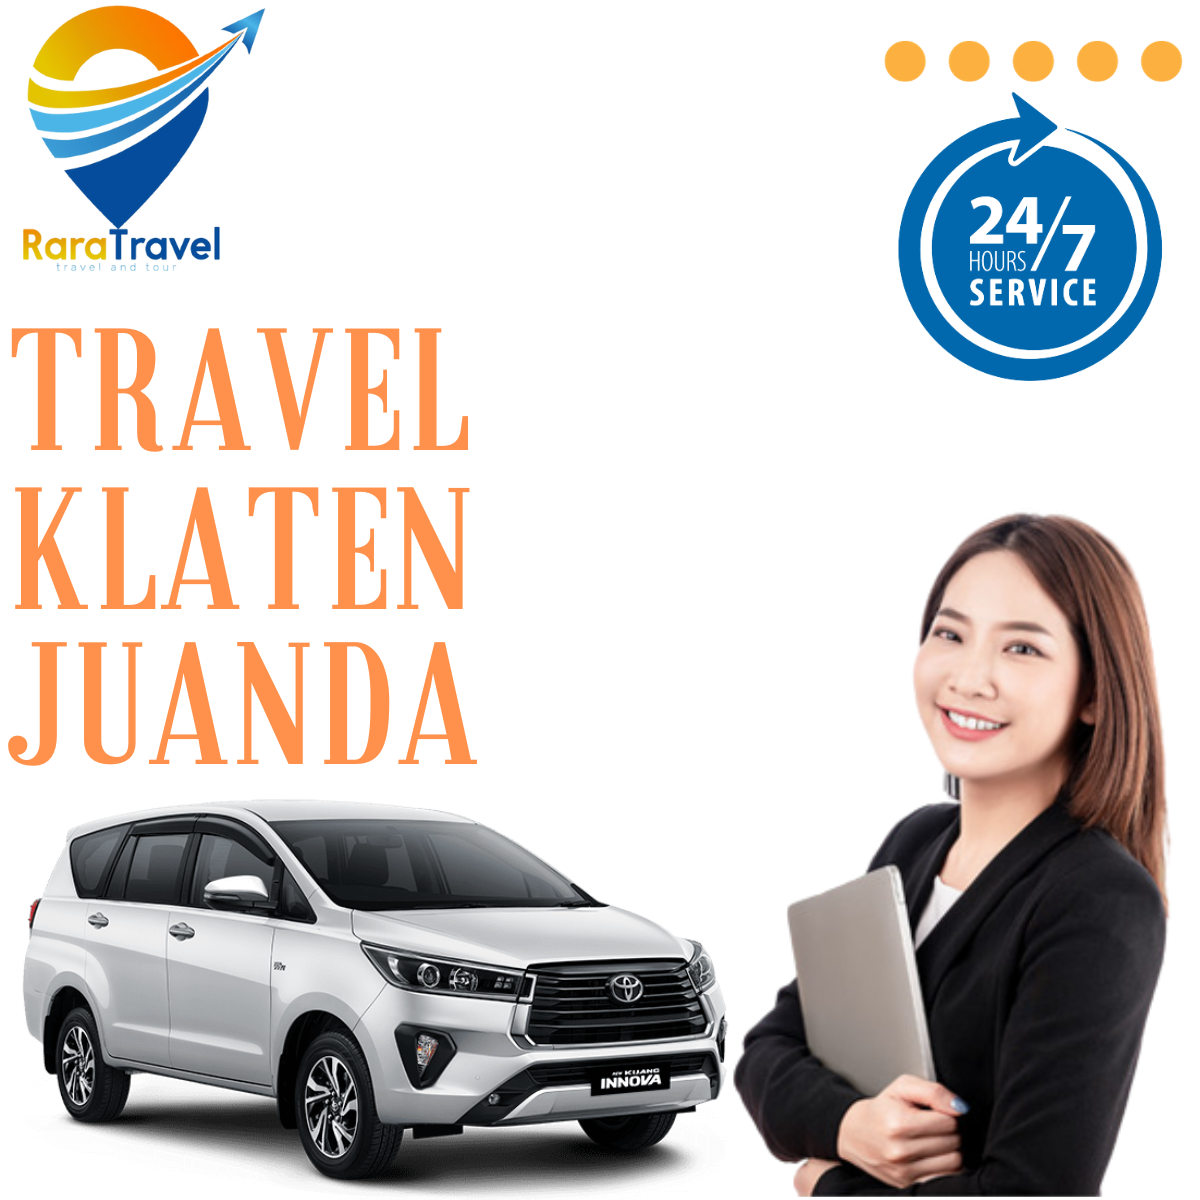 Travel Klaten ke Bandara Juanda Murah, Layanan PP 24 Jam, Harga Mulai Rp. 145K